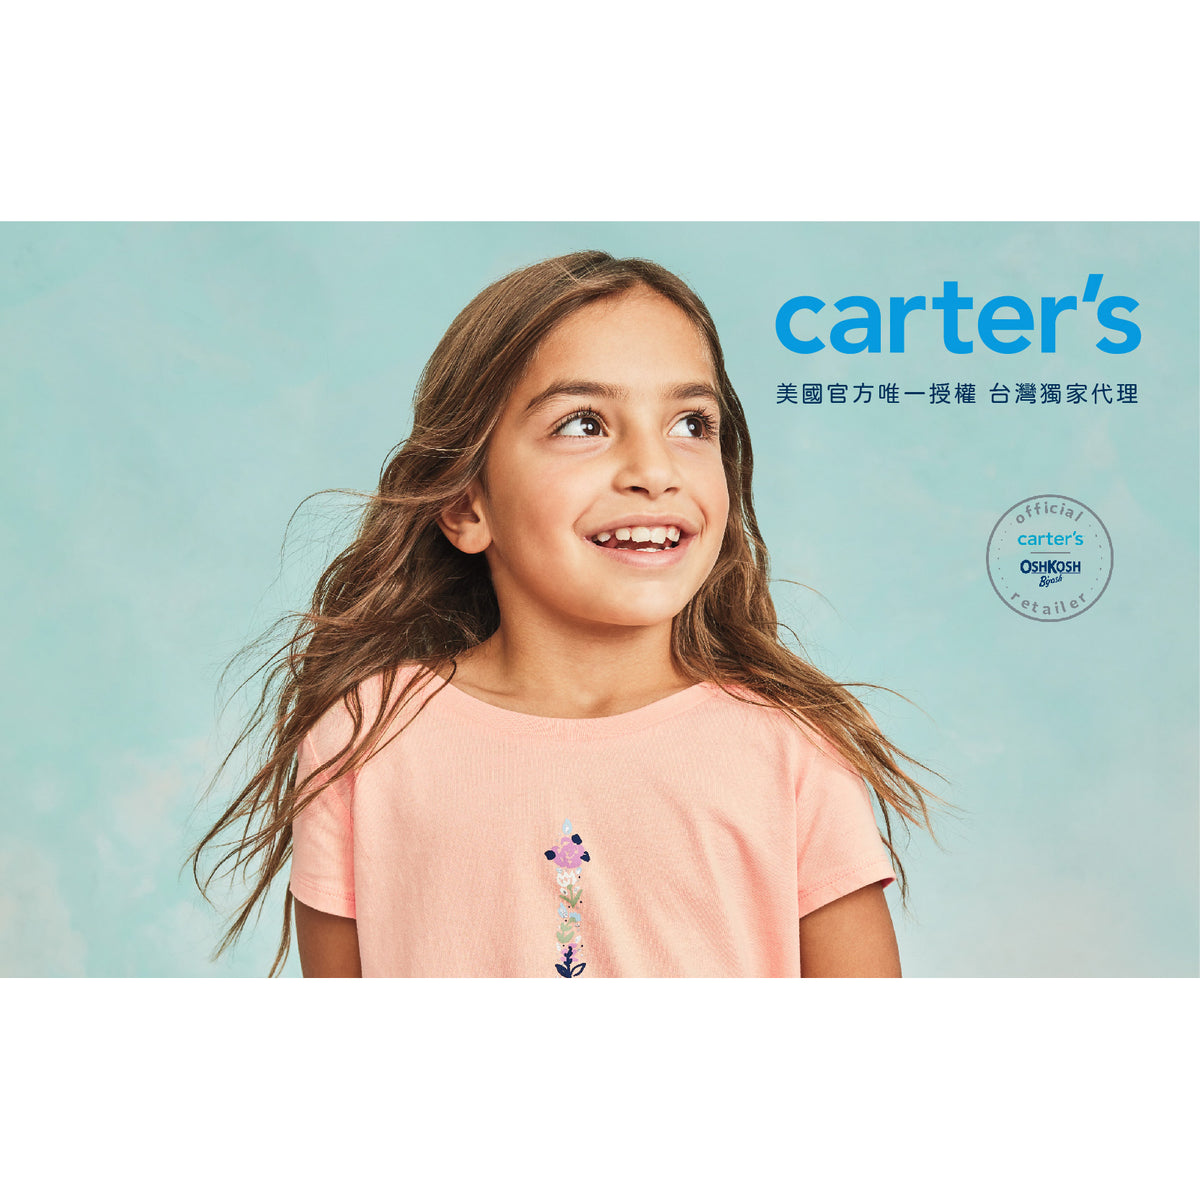 Carter's 粉紅愛心睡衣2件組套裝(6-8)